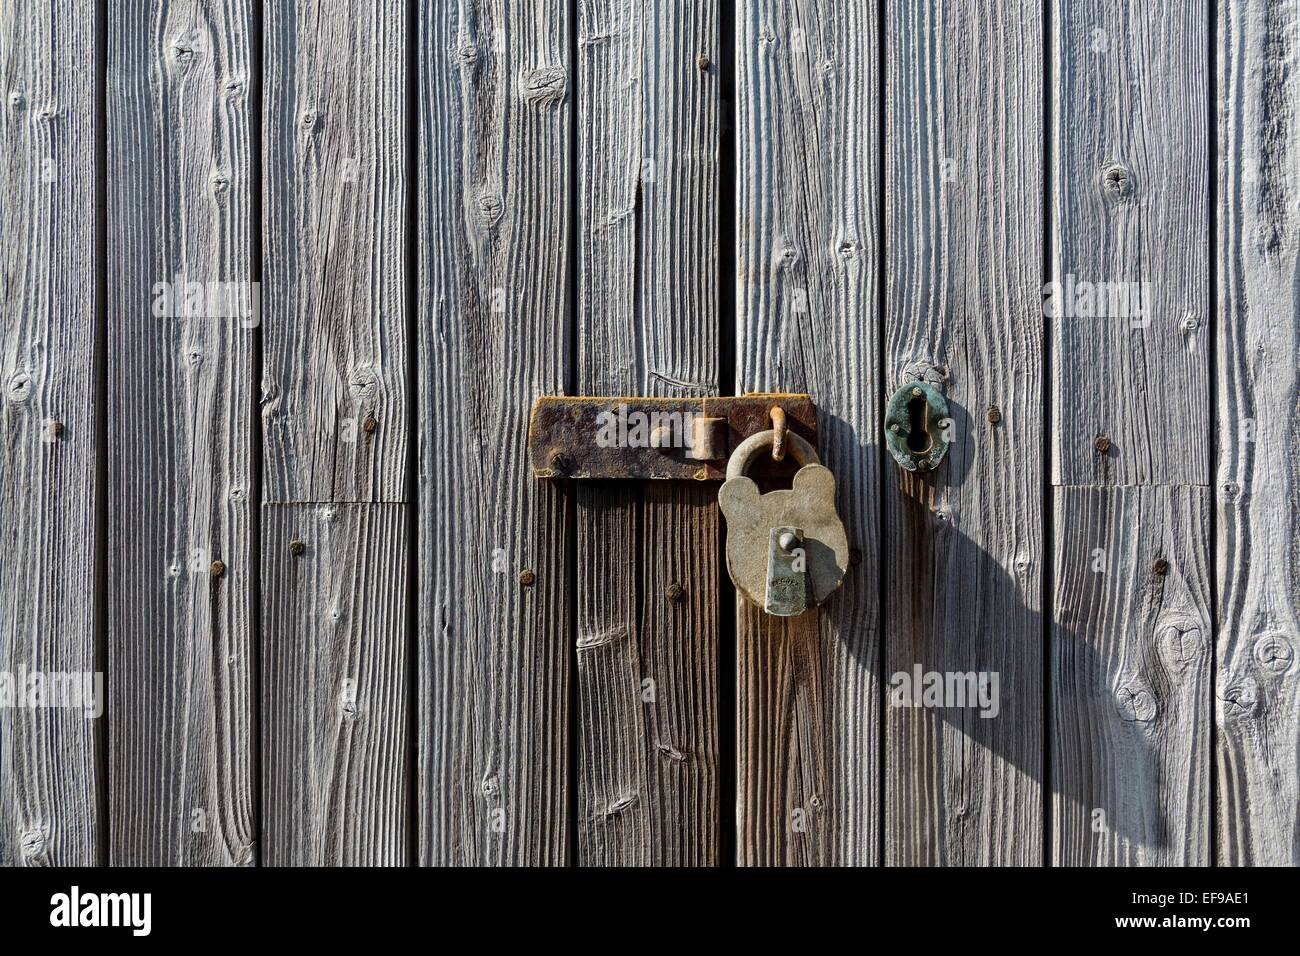 Alten verwitterten und rostenden Metall Riegel und Vorhängeschloss auf einem alten verwitterten bewaldeten Lattenrost Tür.  Bild enthält ein Metall Schlüsselloch. Stockfoto